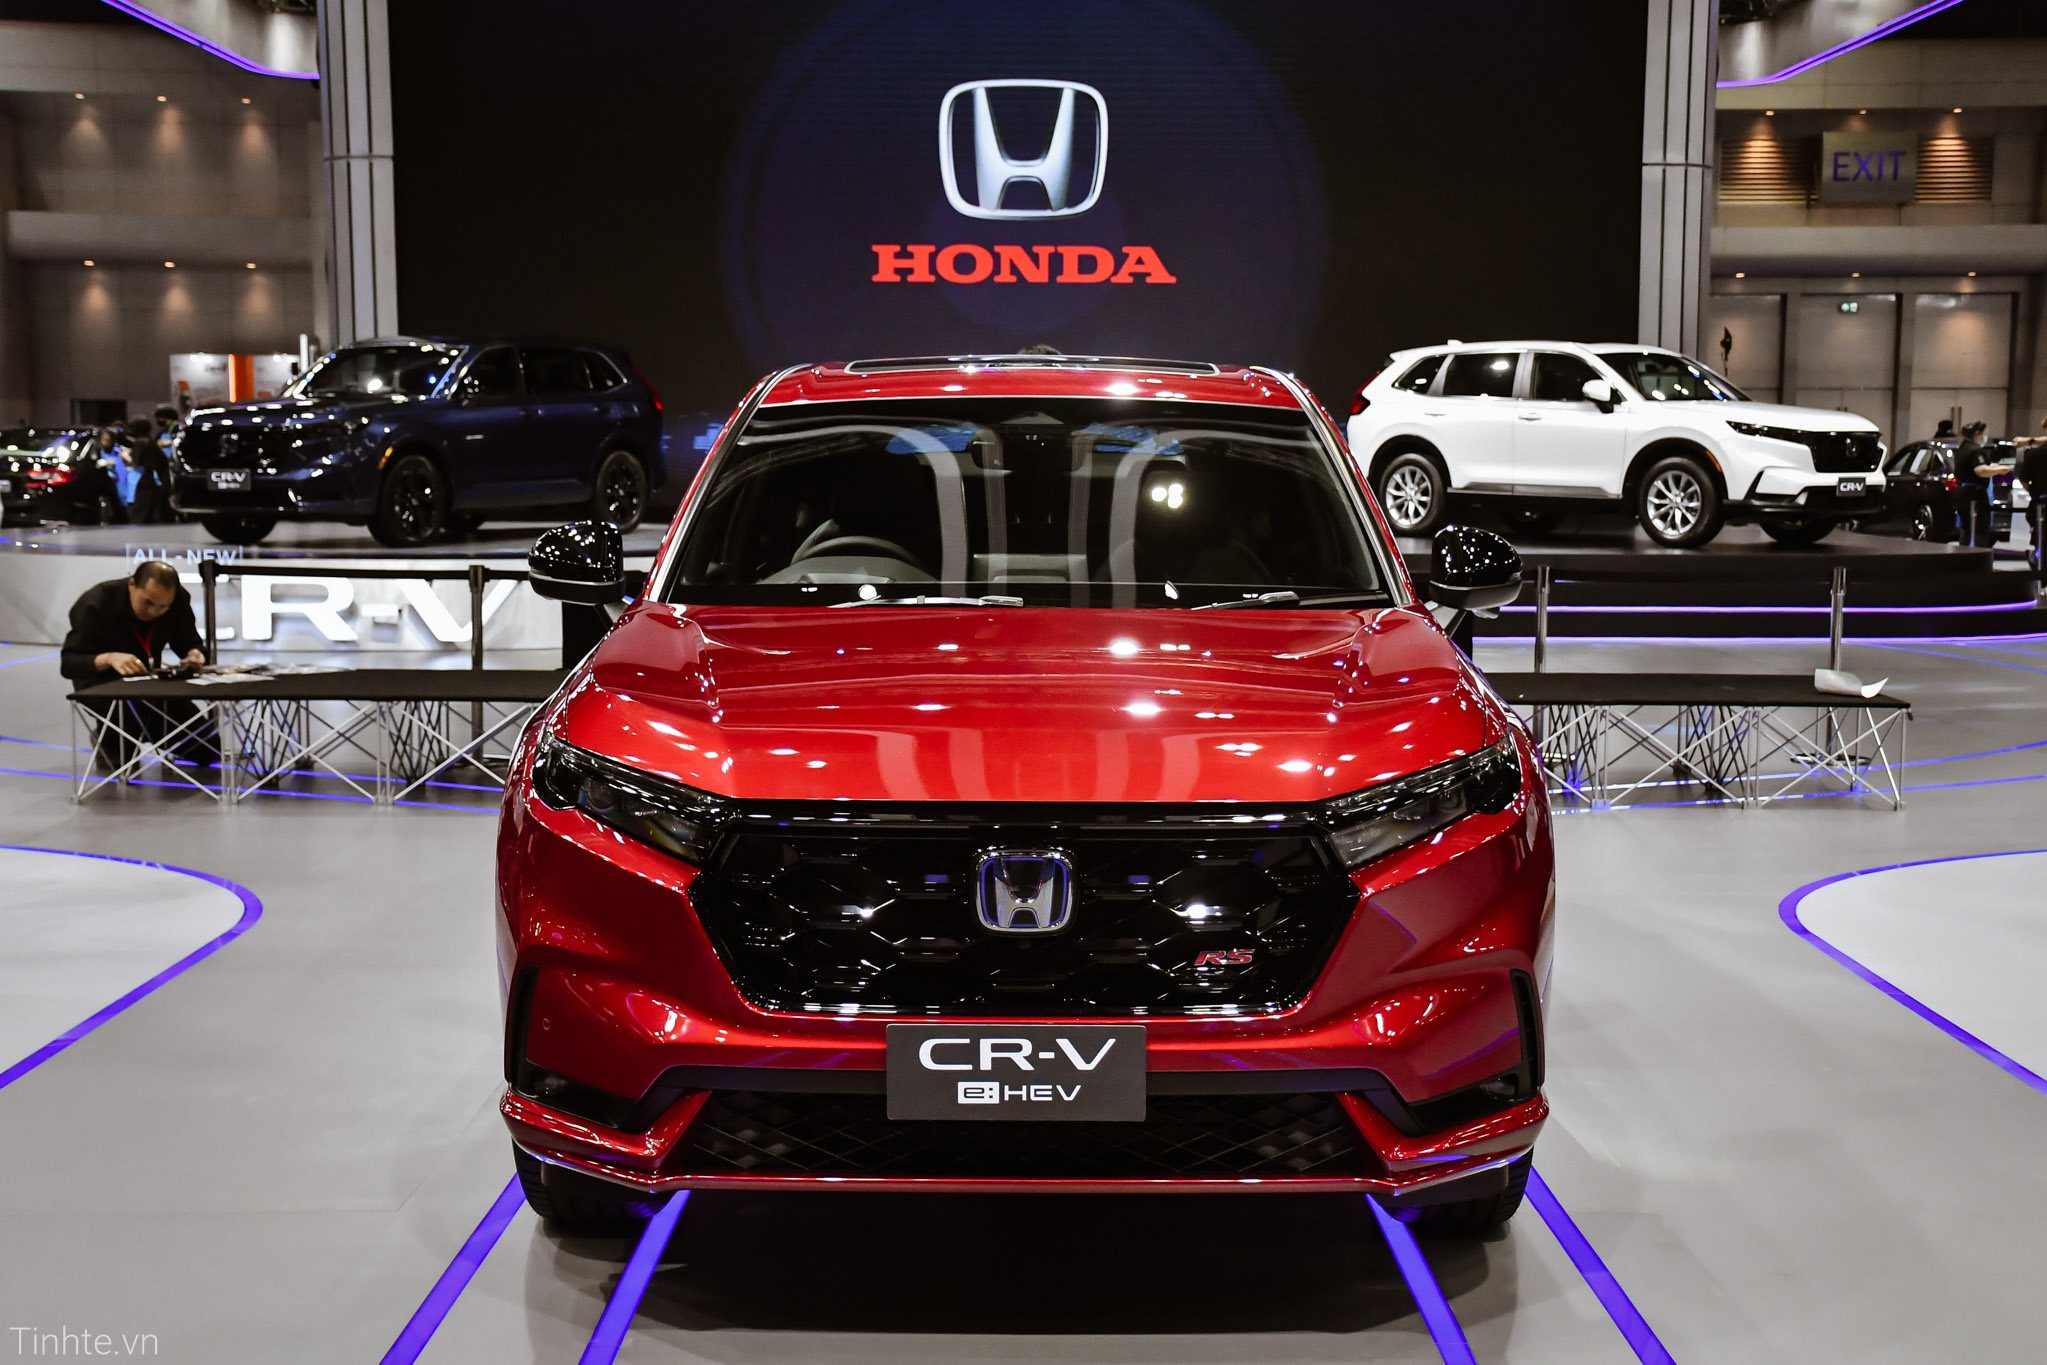 Honda-CR-V-tinhte_1.jpg